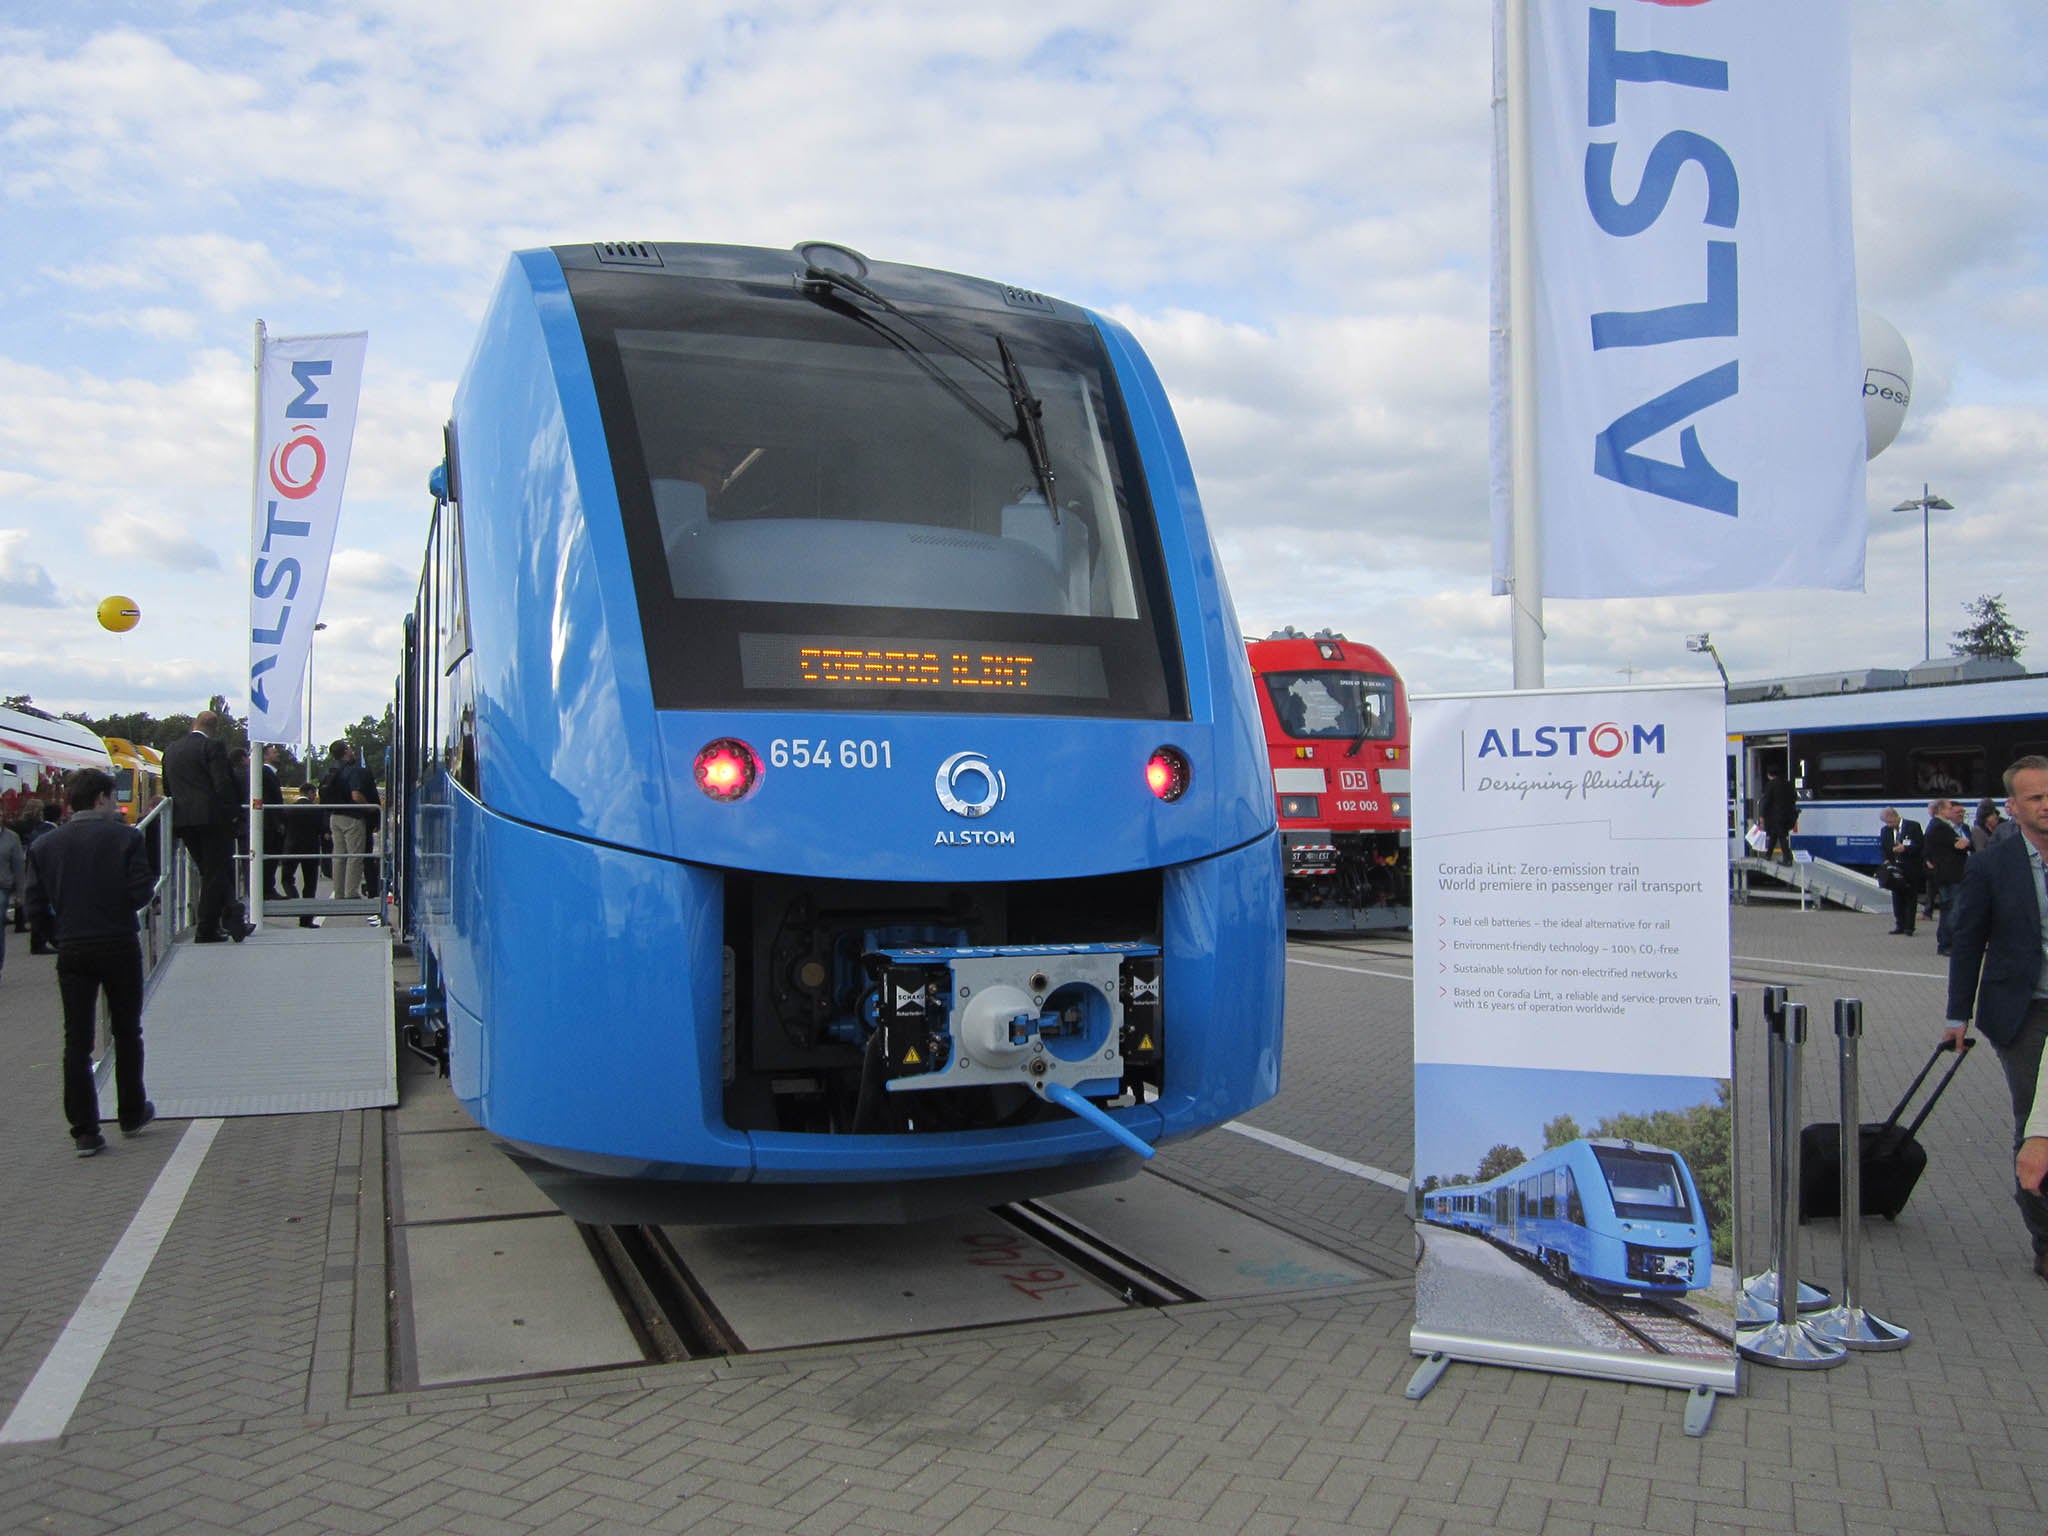 Alstom’s hydrogen-powered passenger train, a world first